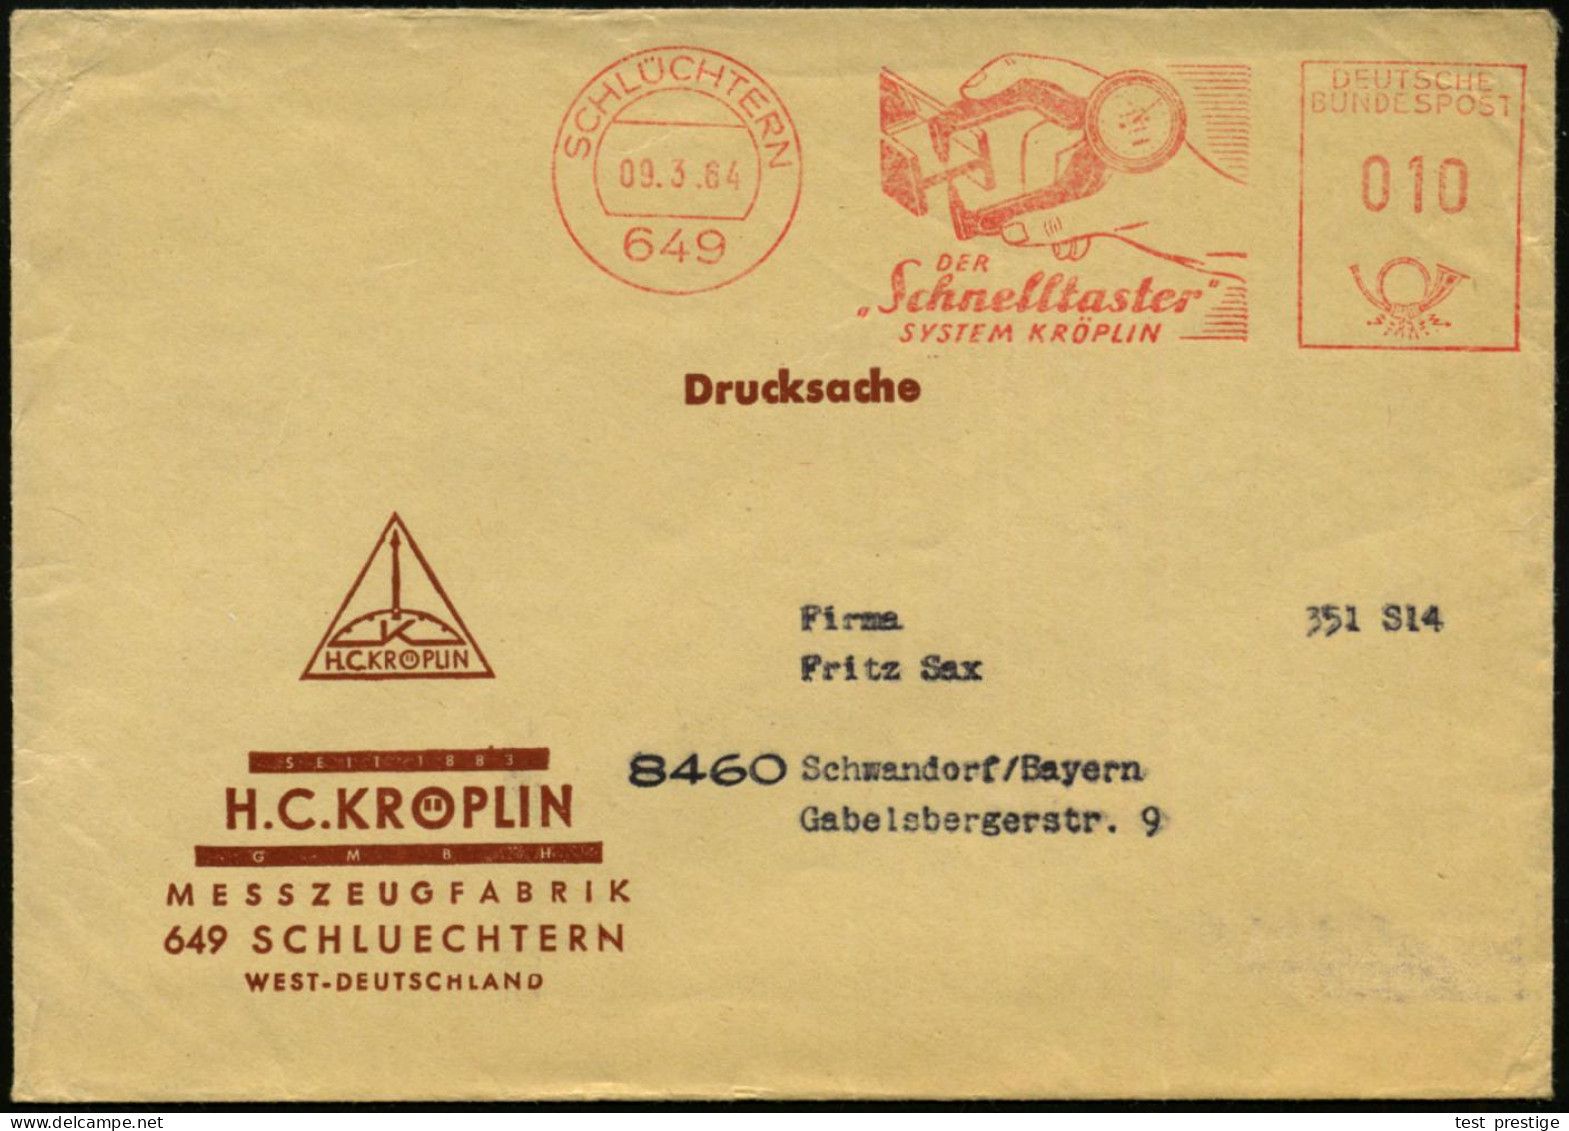 (16) SCHLÜCHTERN/ DER "Schnelltaster"/ SYSTEM KRÖPELIN 1964 (9.3.) AFS = Feinmeßgerät (für Material-Durchmesser), Dekora - Autres